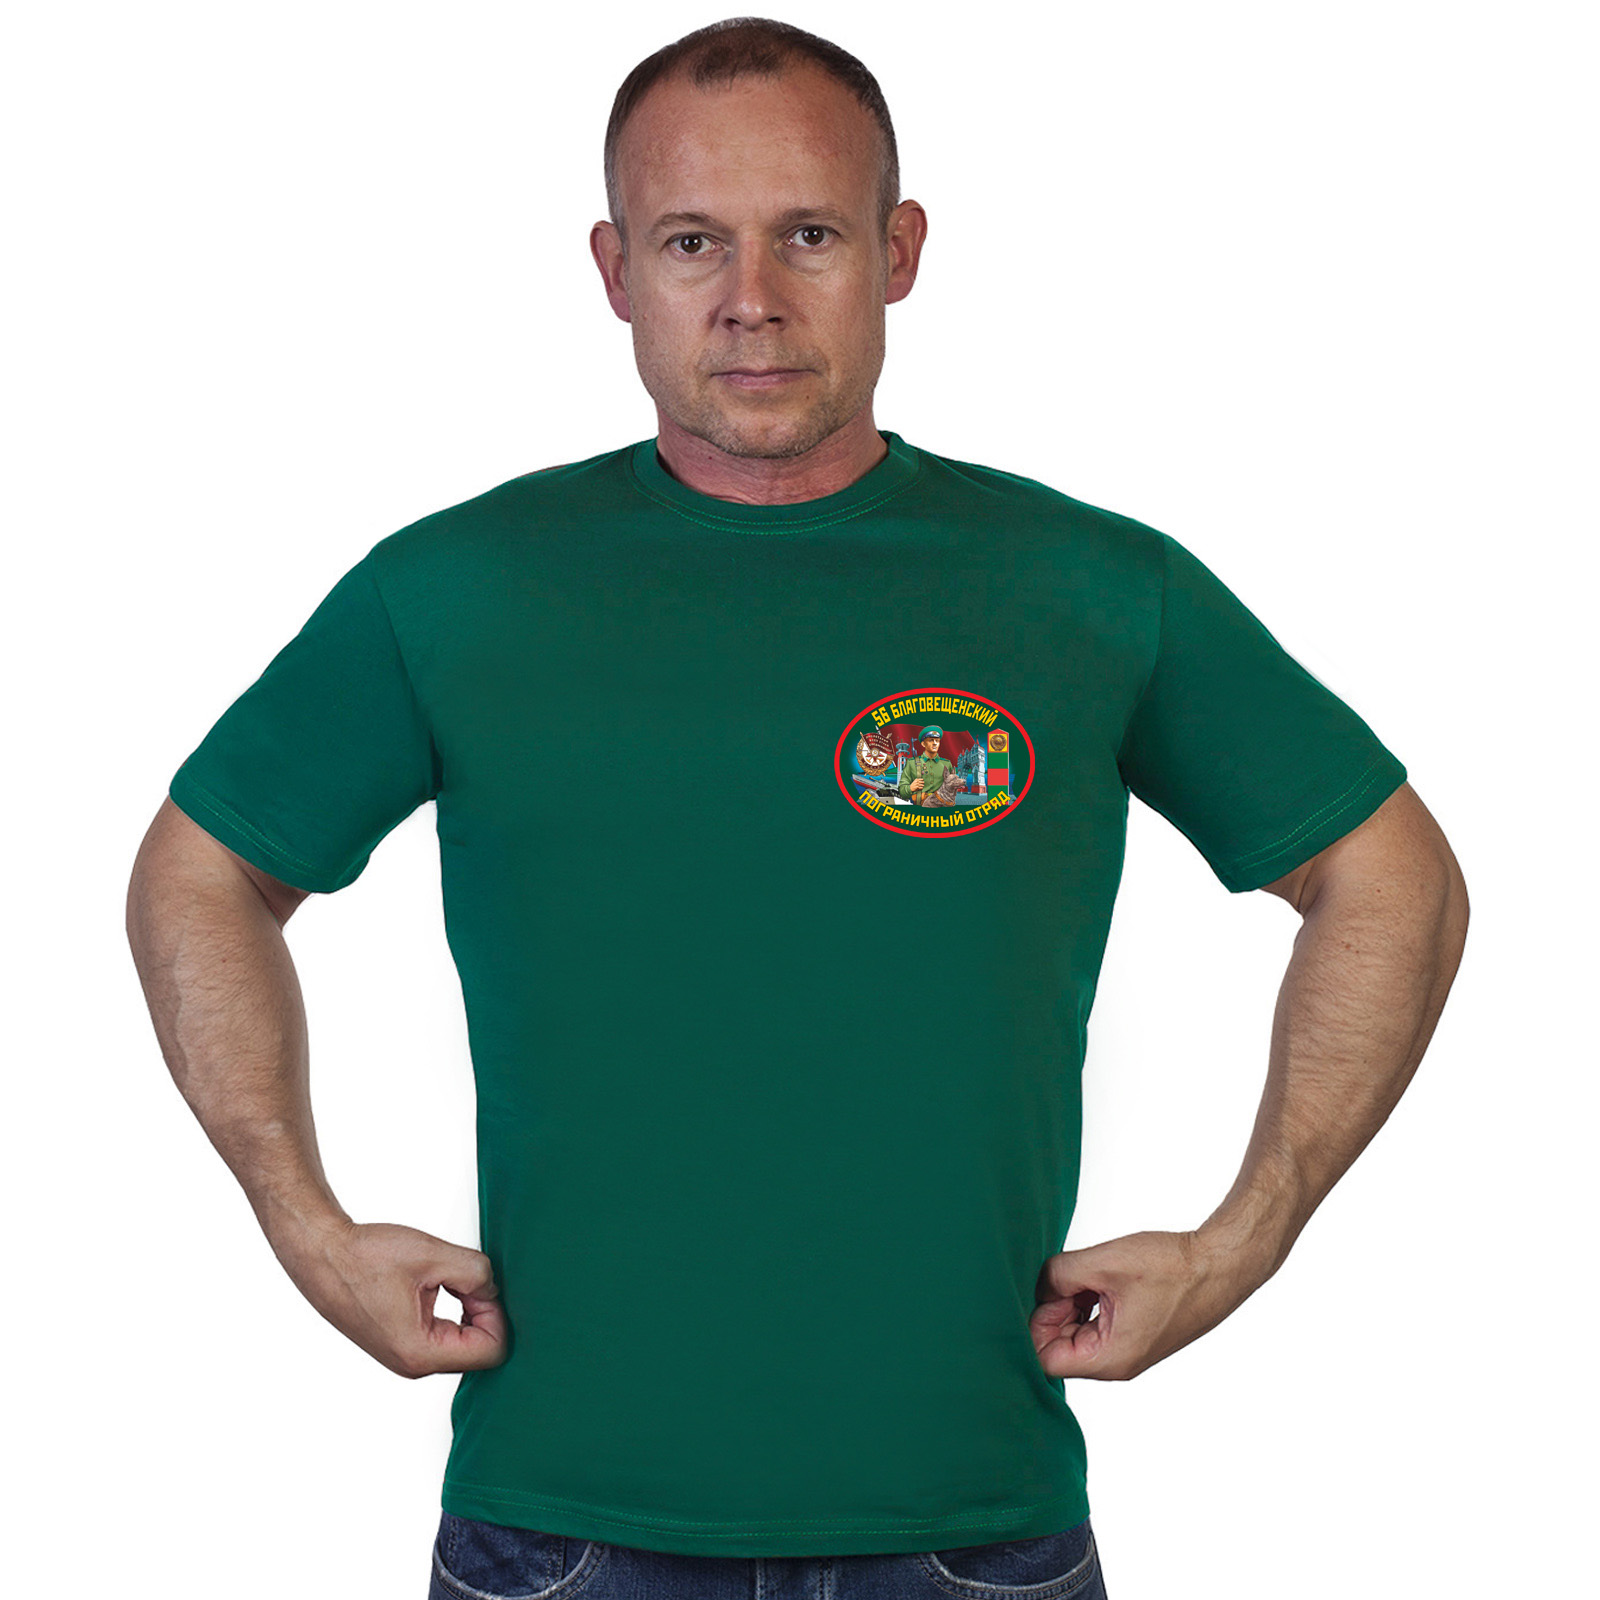 Купить в интернет магазине футболку 56 Благовещенский погранотряд